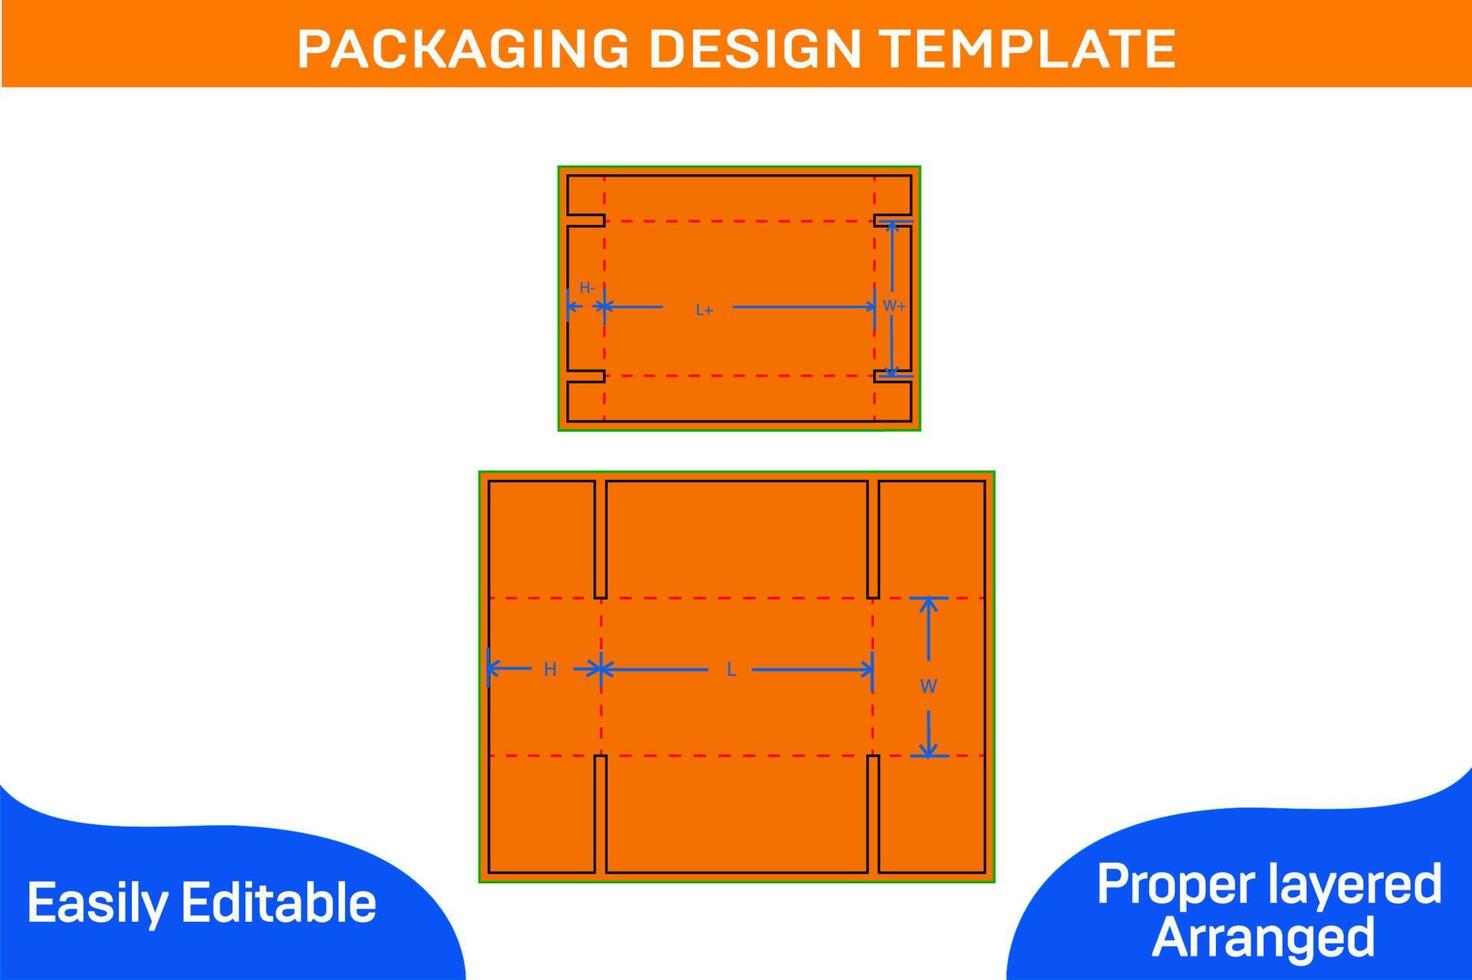 redimensionable acanalado caja de cartón caja estándar caja 3d hacer y dieline modelo vector